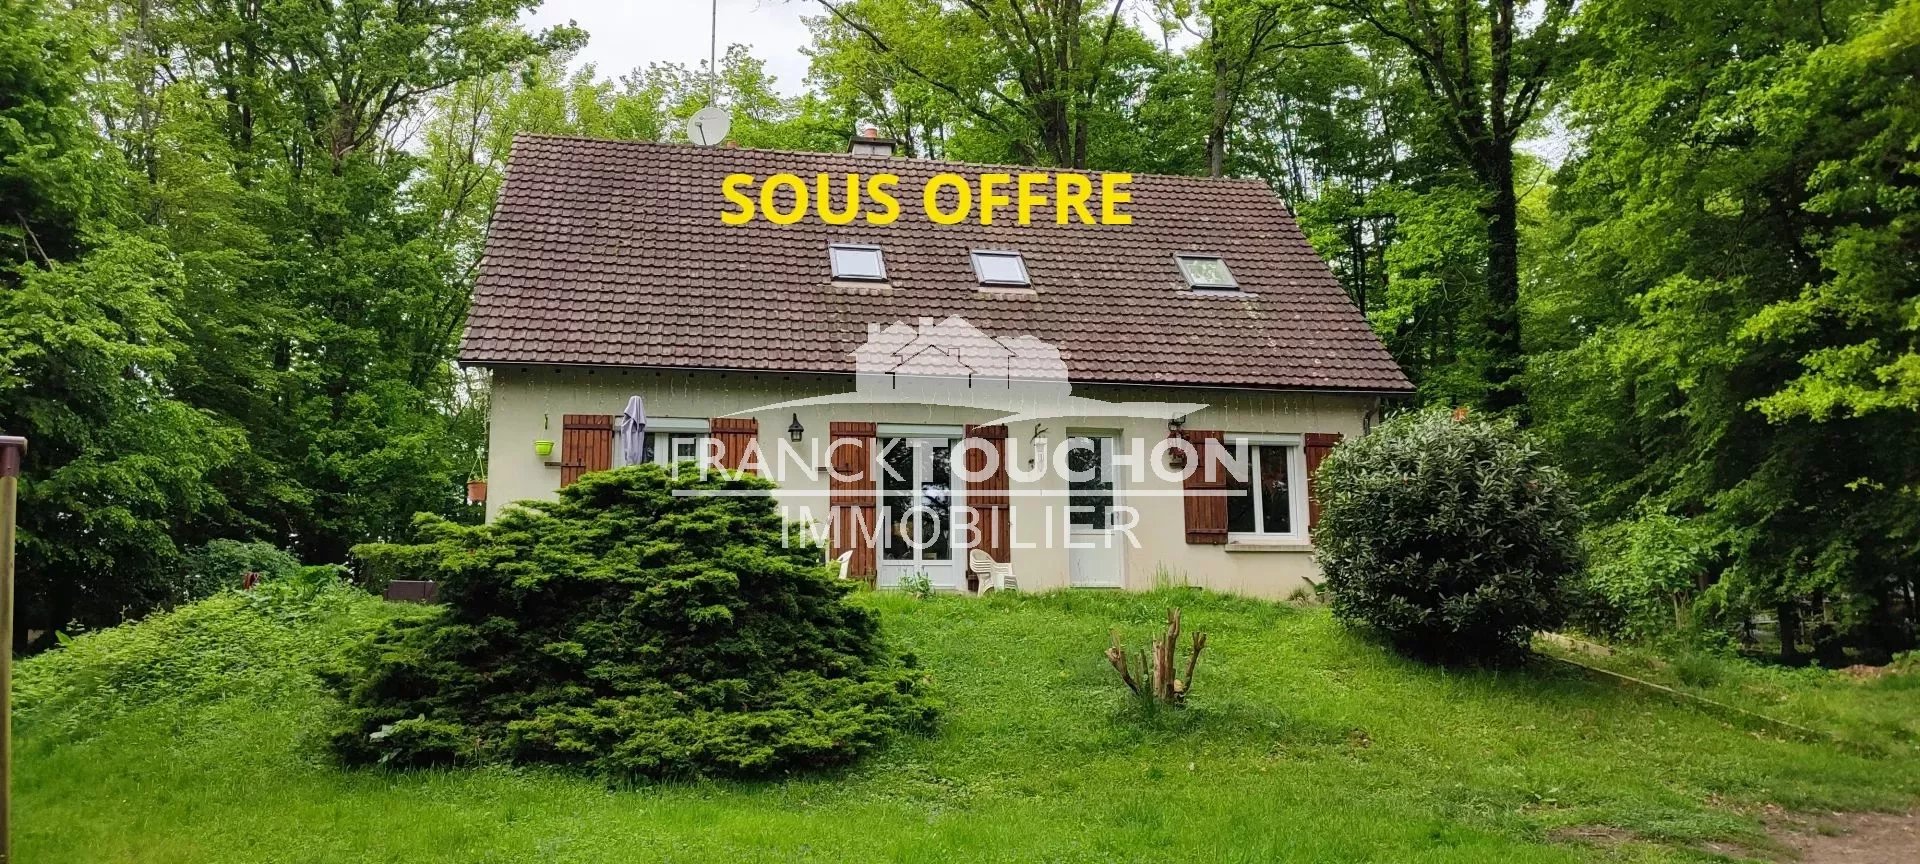 PAVILLON à 5 min de COURTENAY (Loiret) - 151 m² hab - 5 chambres - sous-sol - terrain de 3180 m²